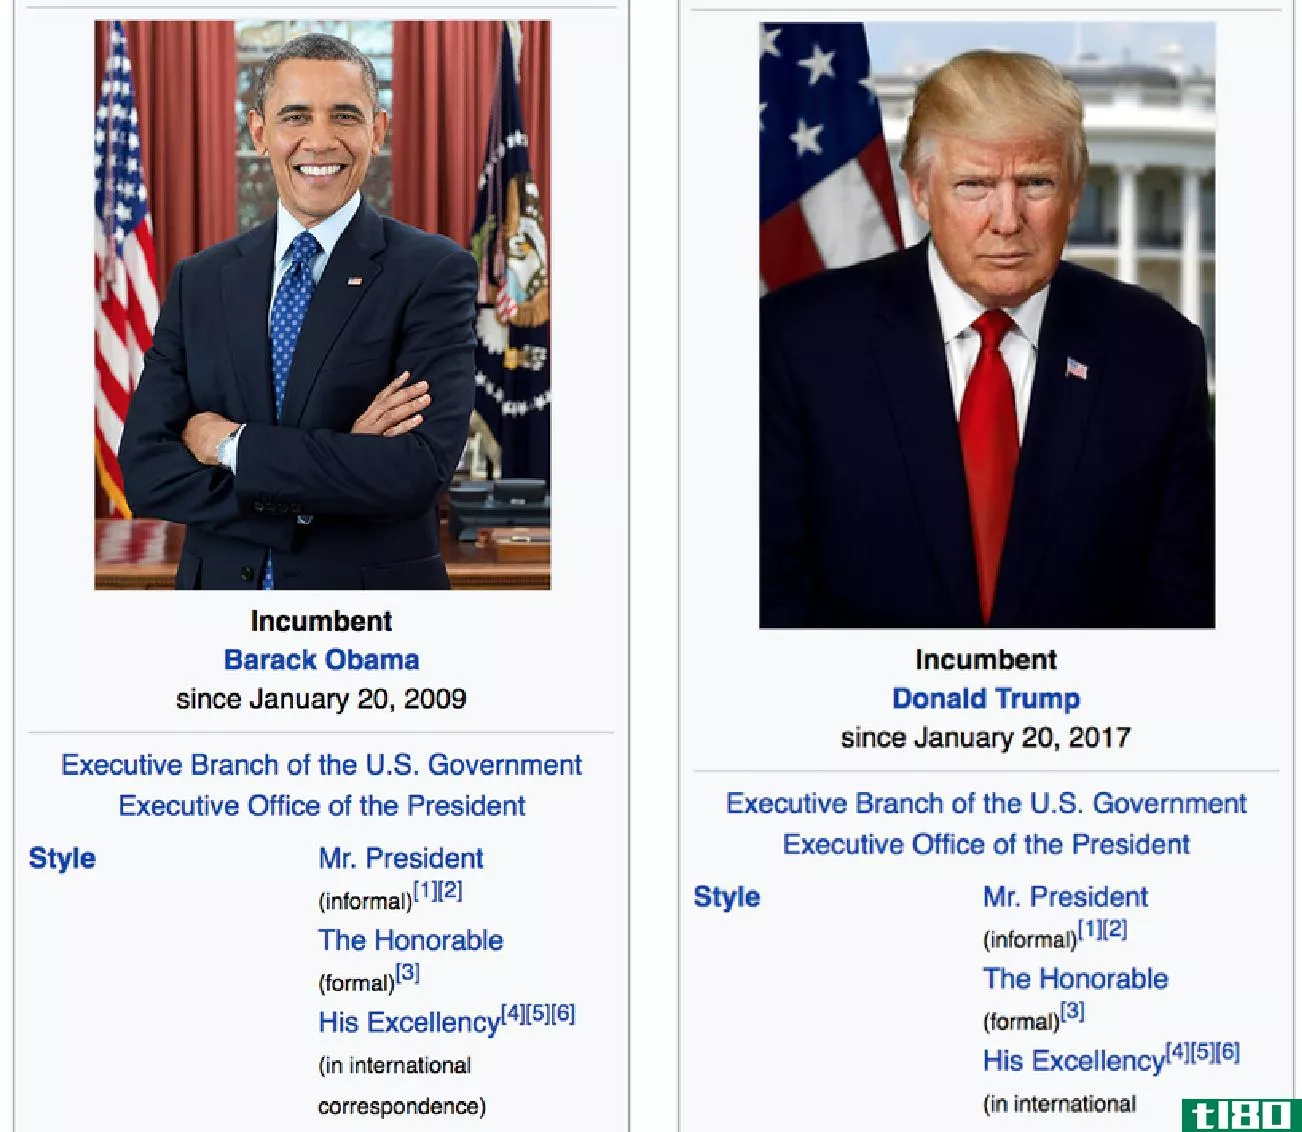 维基百科编辑还不能决定特朗普是否是总统